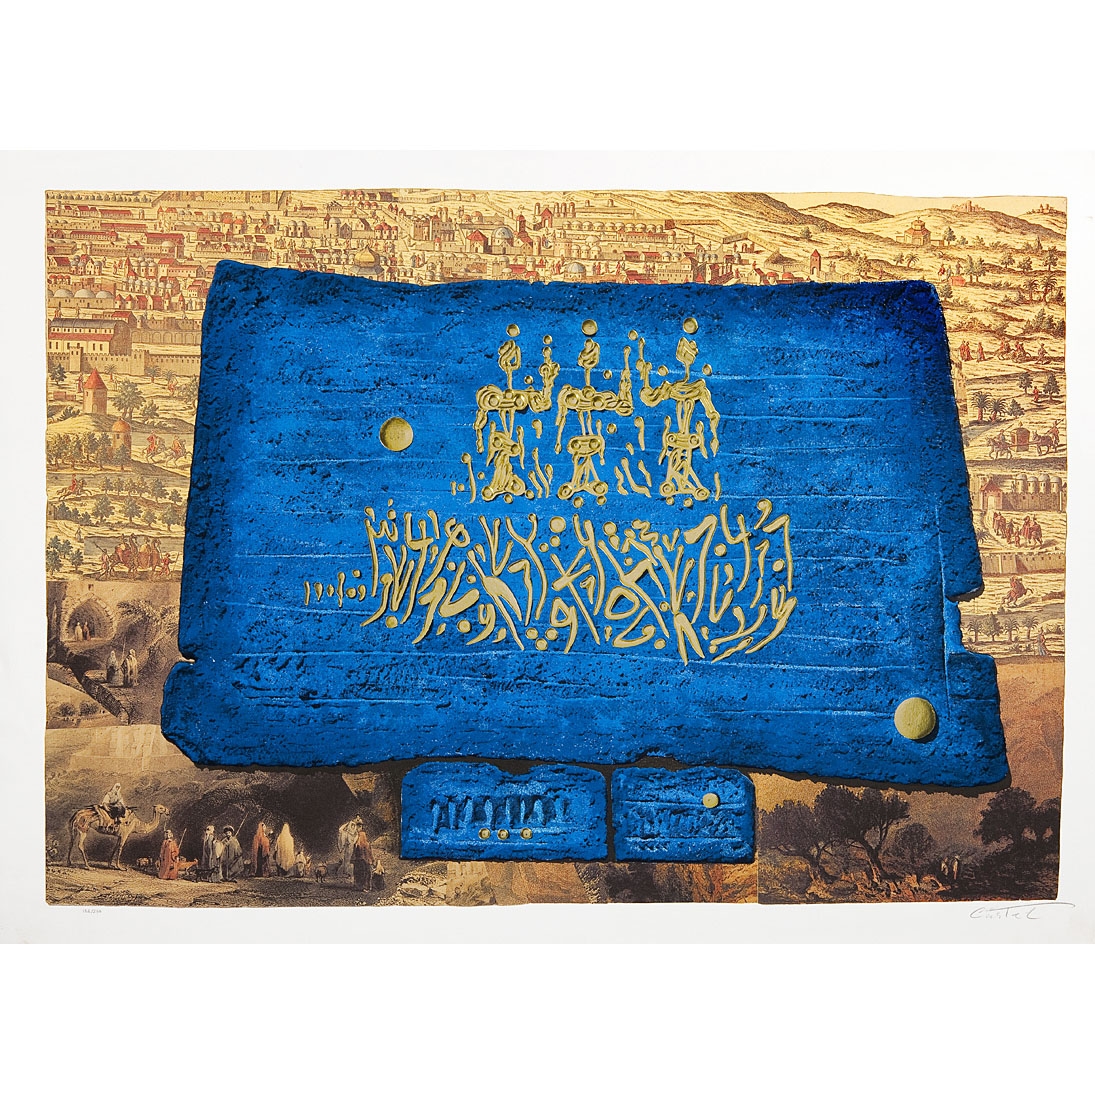 Kings of Jerusalem. Artist: Moshe Castel. Original gold embossed serigraph - 1